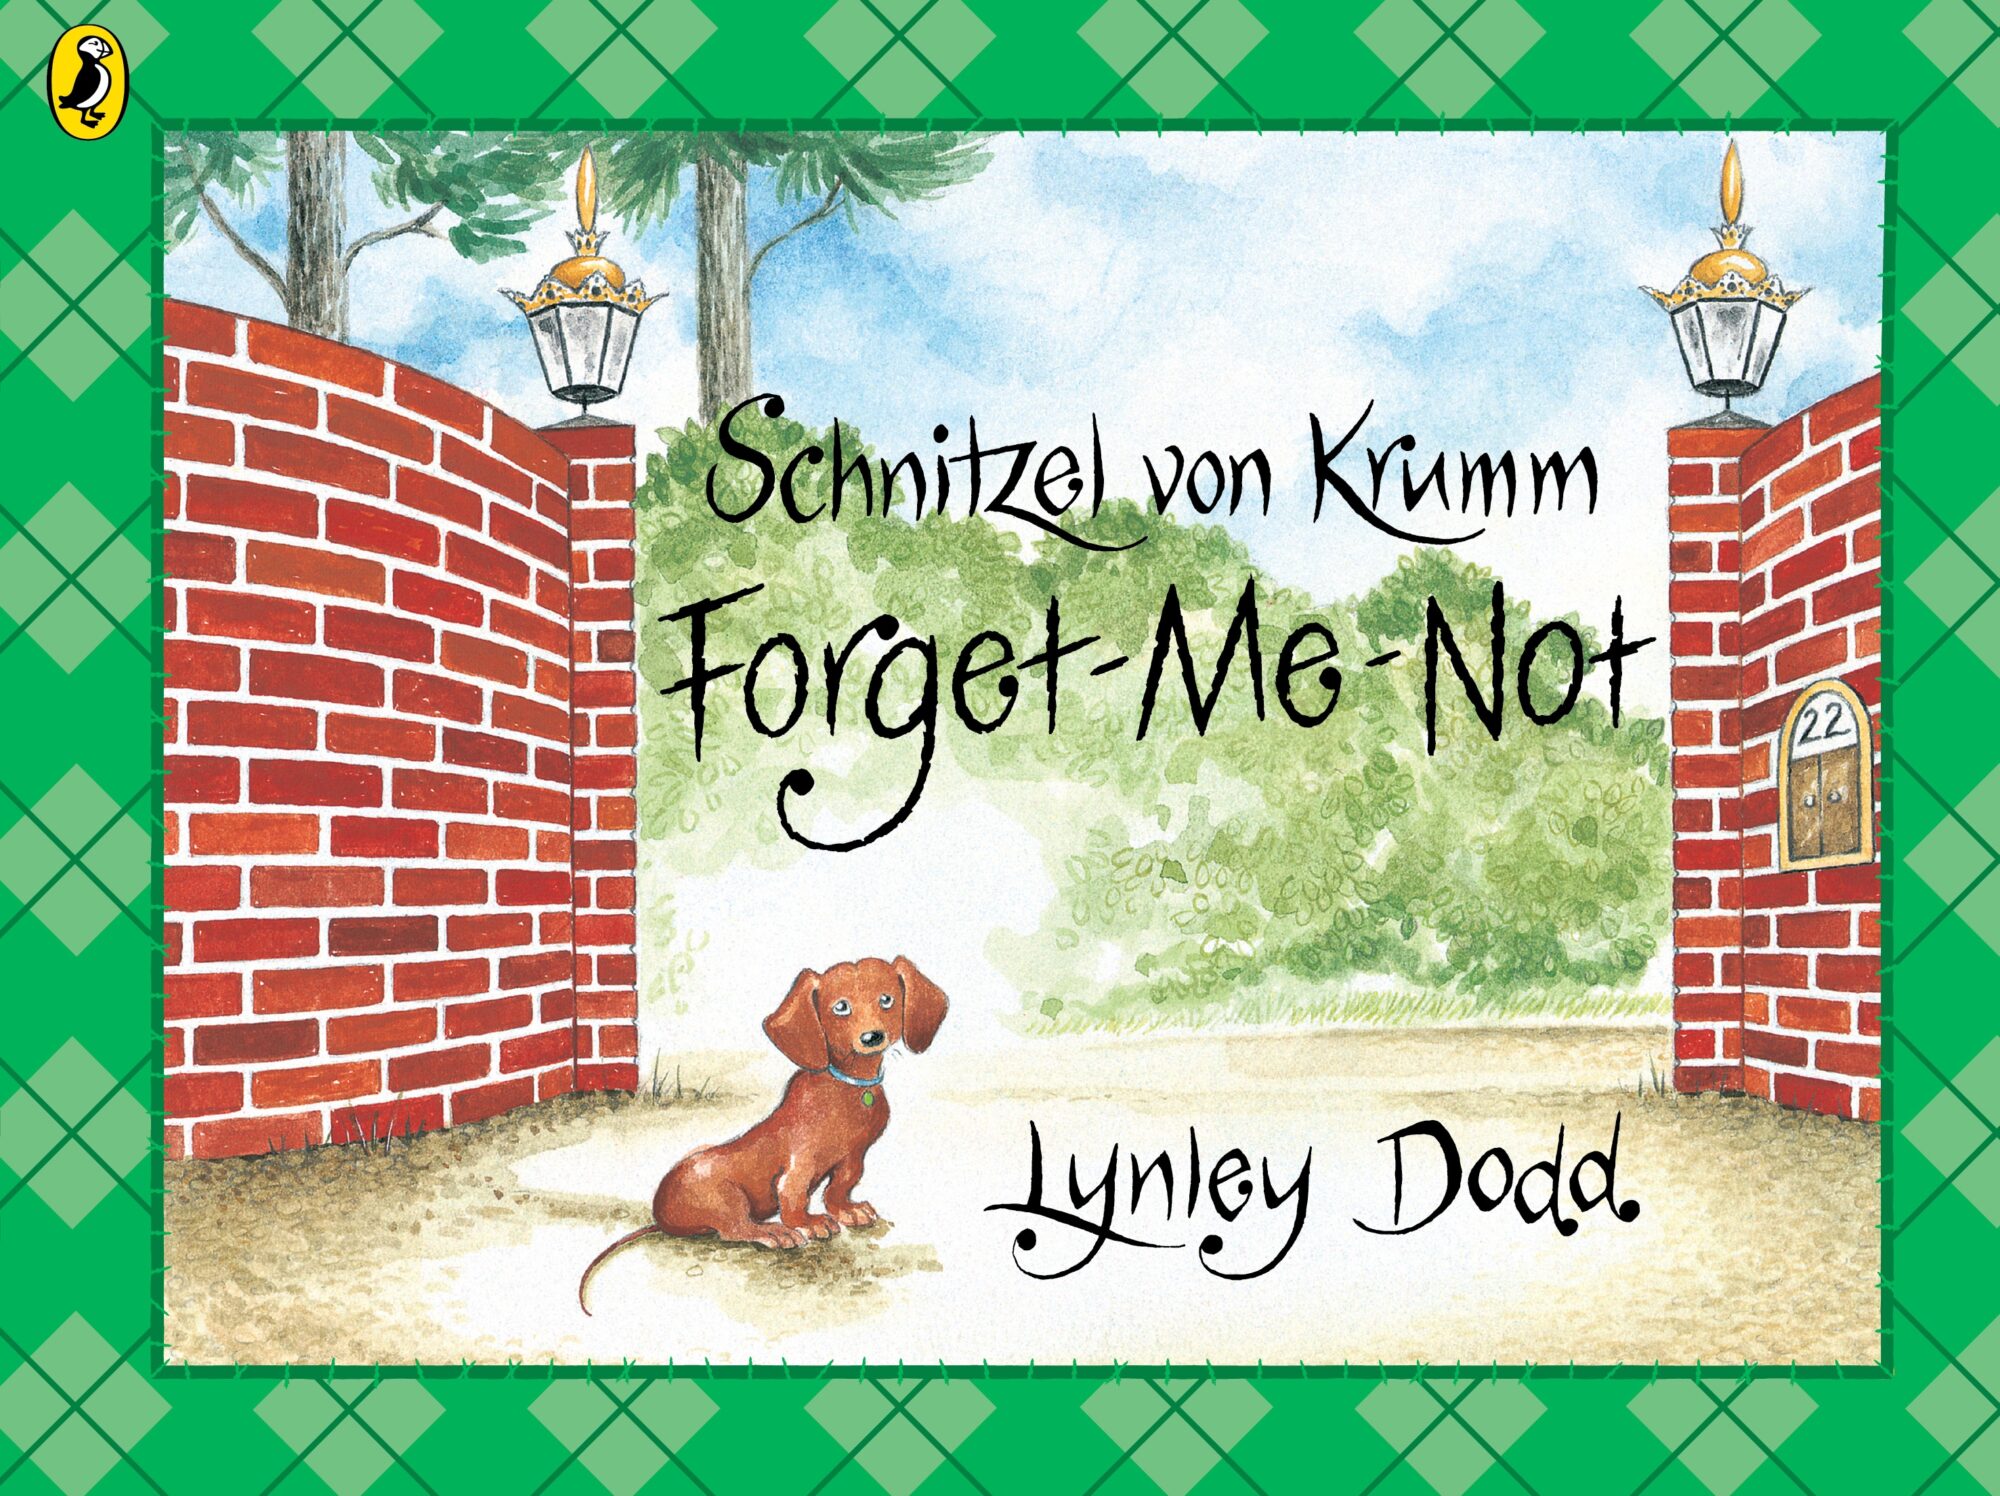 Schnitzel von Krumm Forget-Me-Not by Lynley Dodd Picture Book Analysis